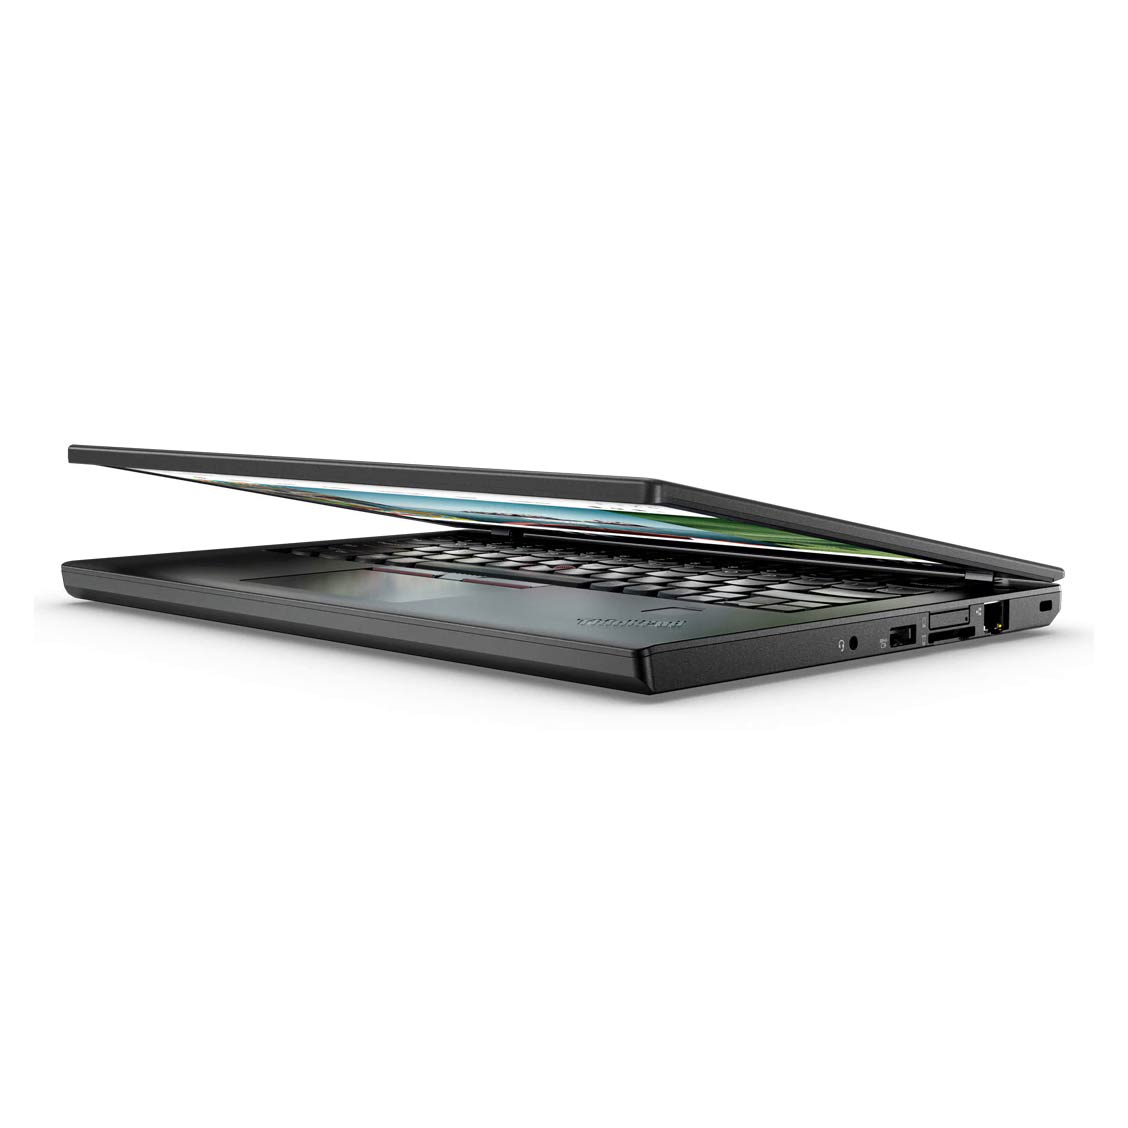 لپ تاپ استوک لنووThinkPad X270پردازندهi5